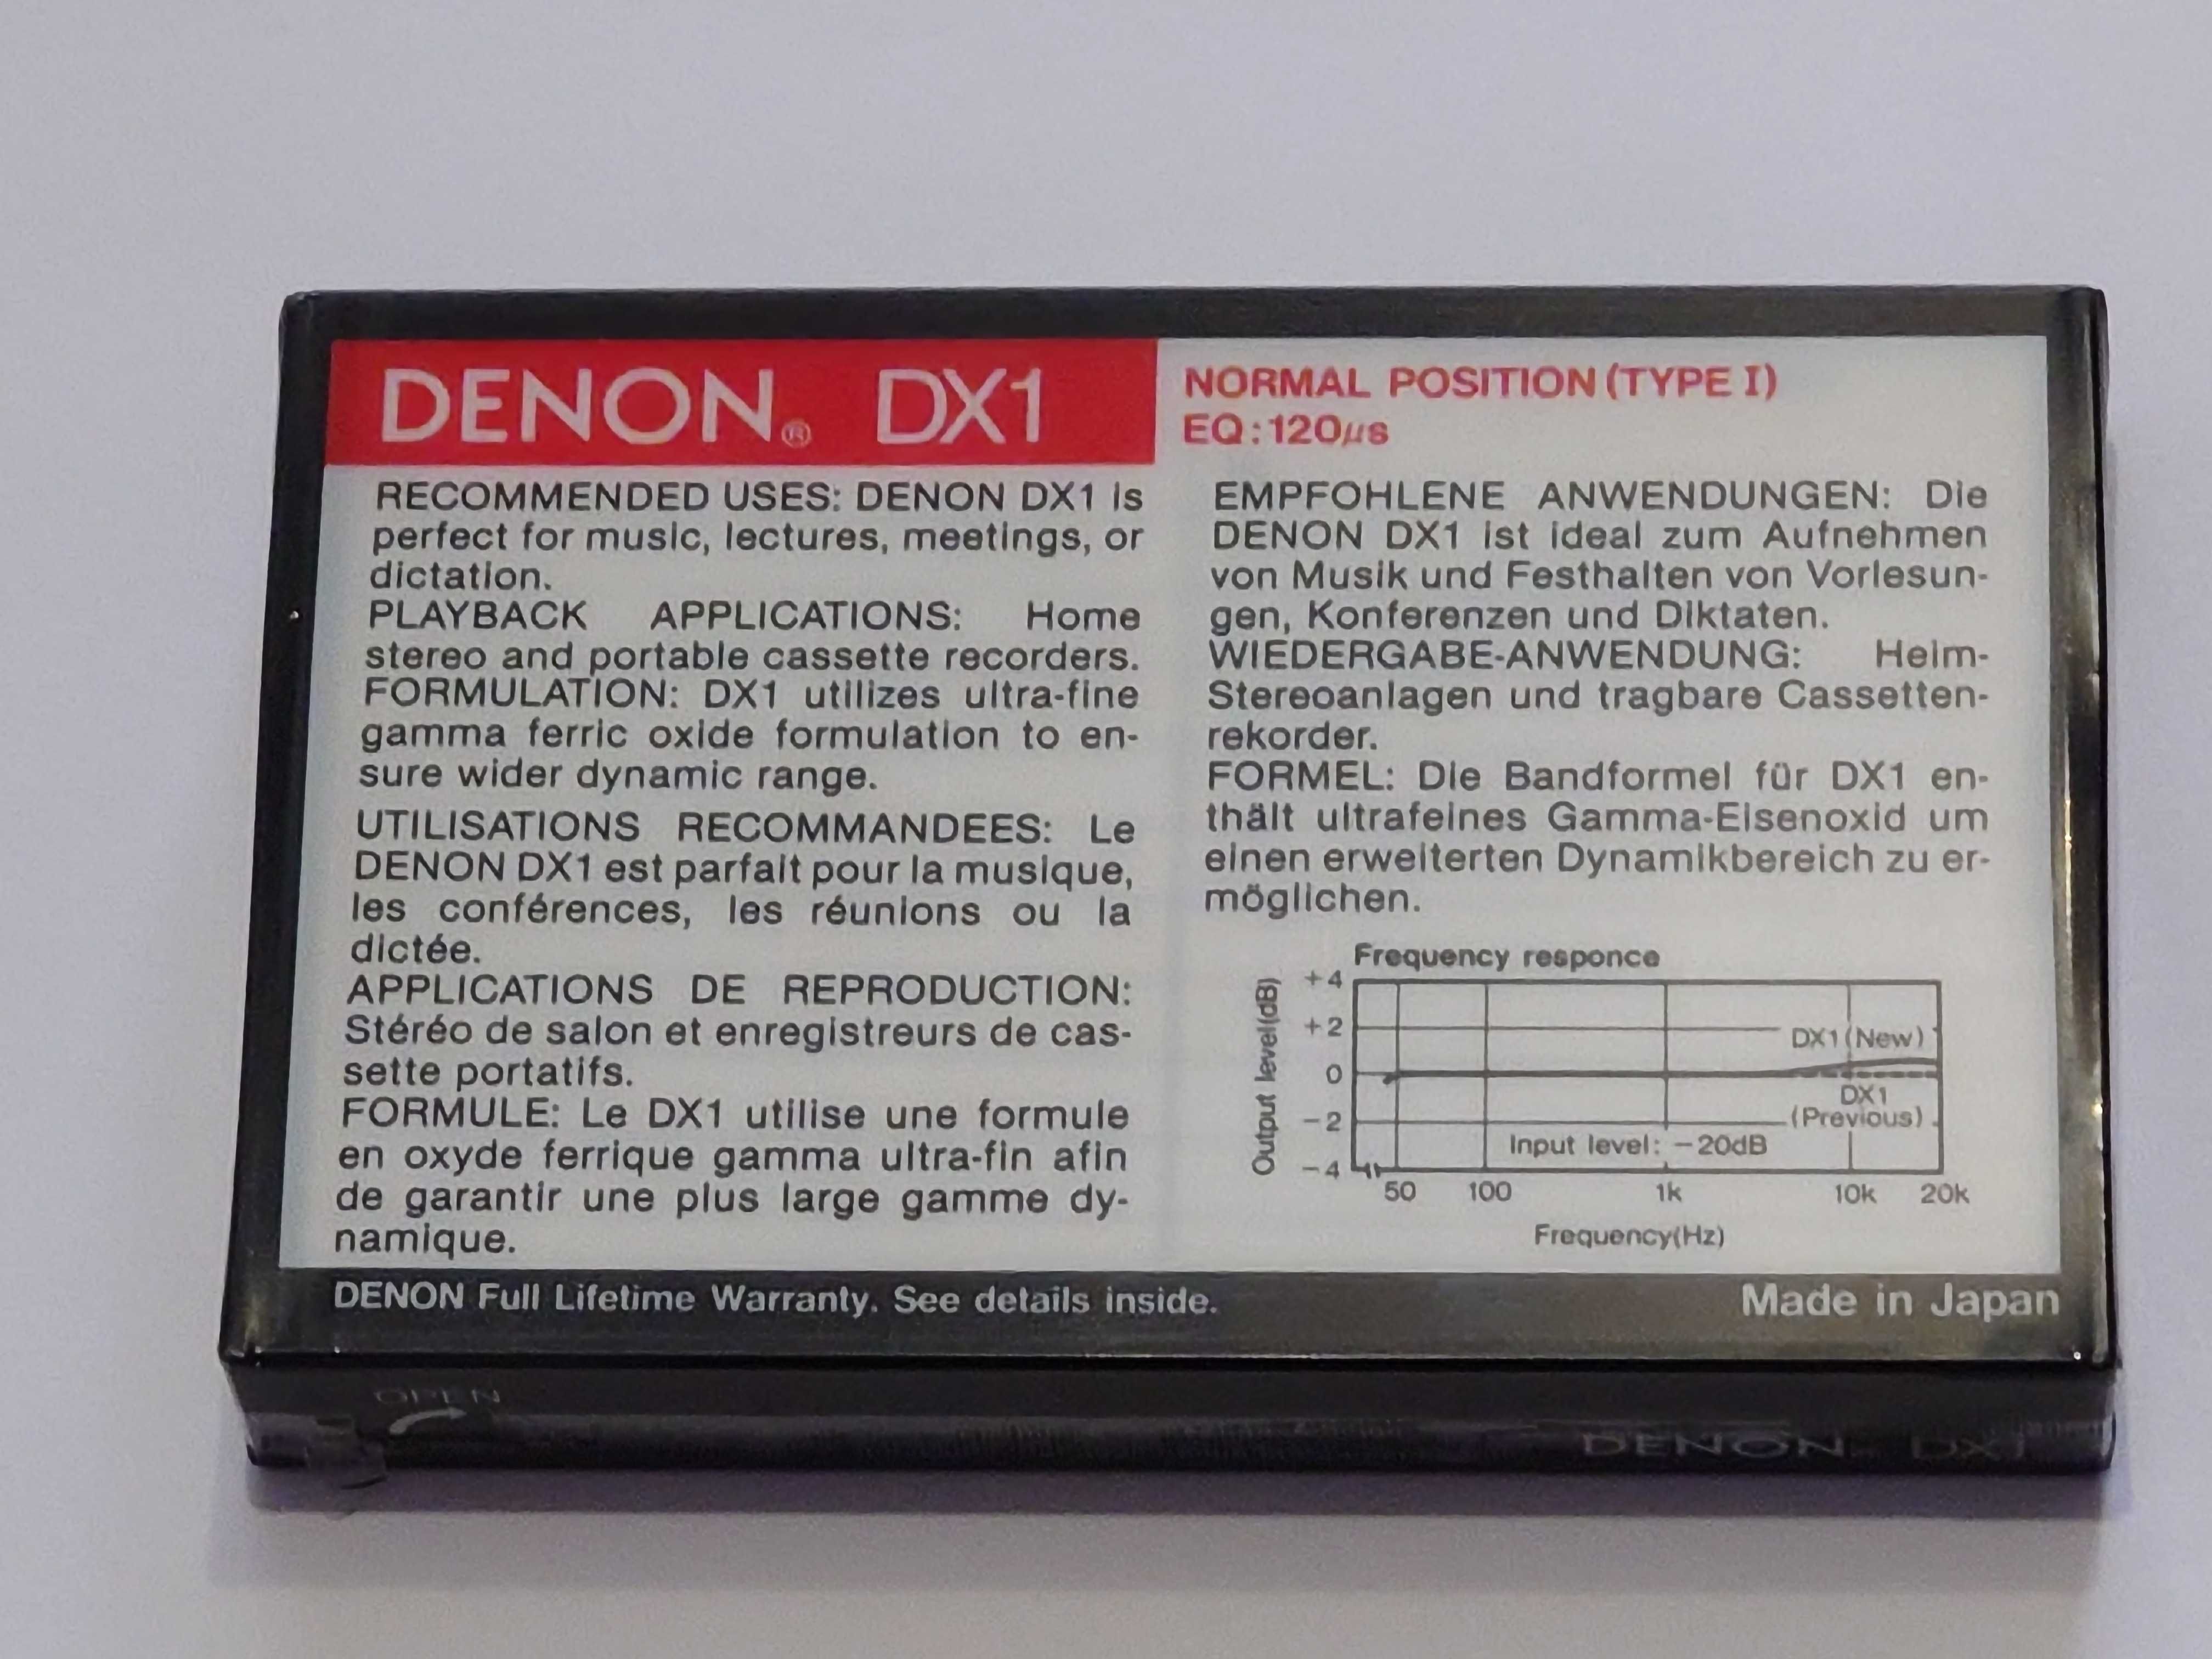 Denon DX1 90 model na lata 1990/91 - rynek Amerykański